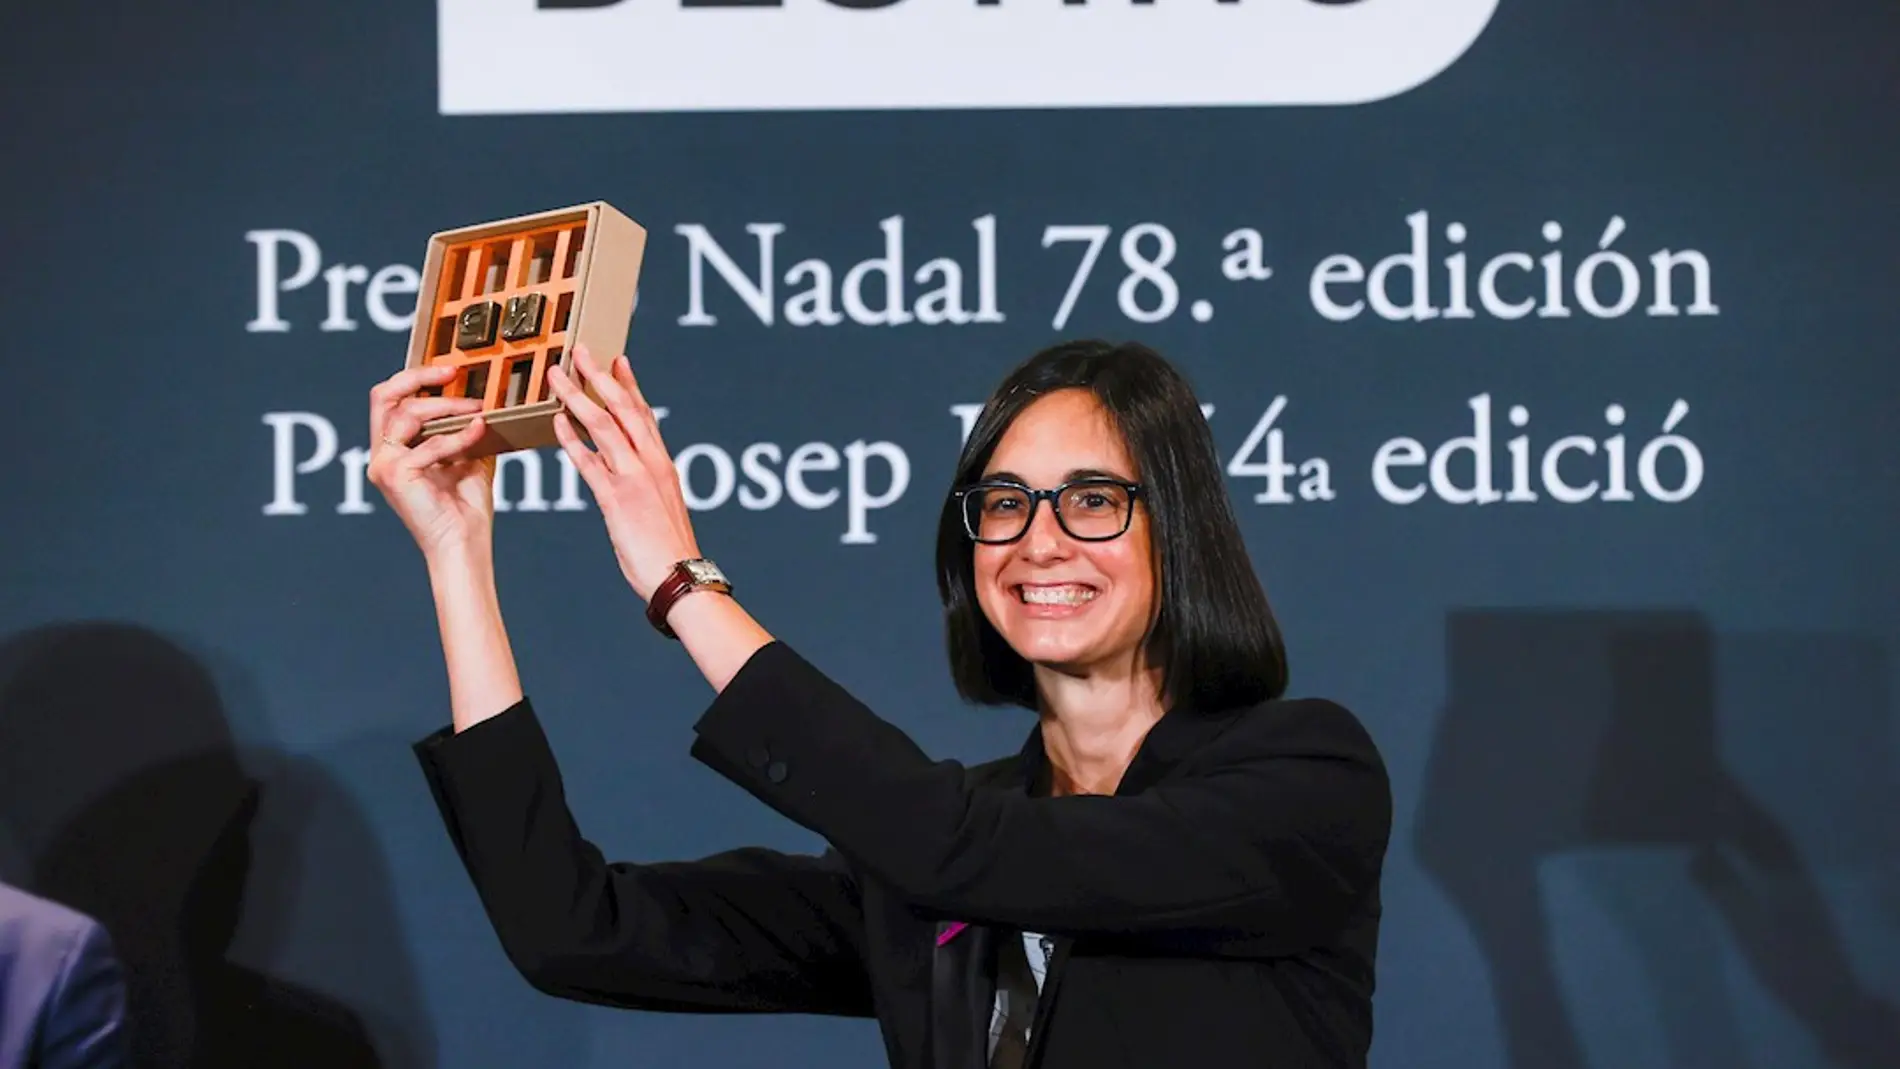 La periodista madrileña Inés Martín Rodrigo gana la 78 edición del Premio Nadal de novela